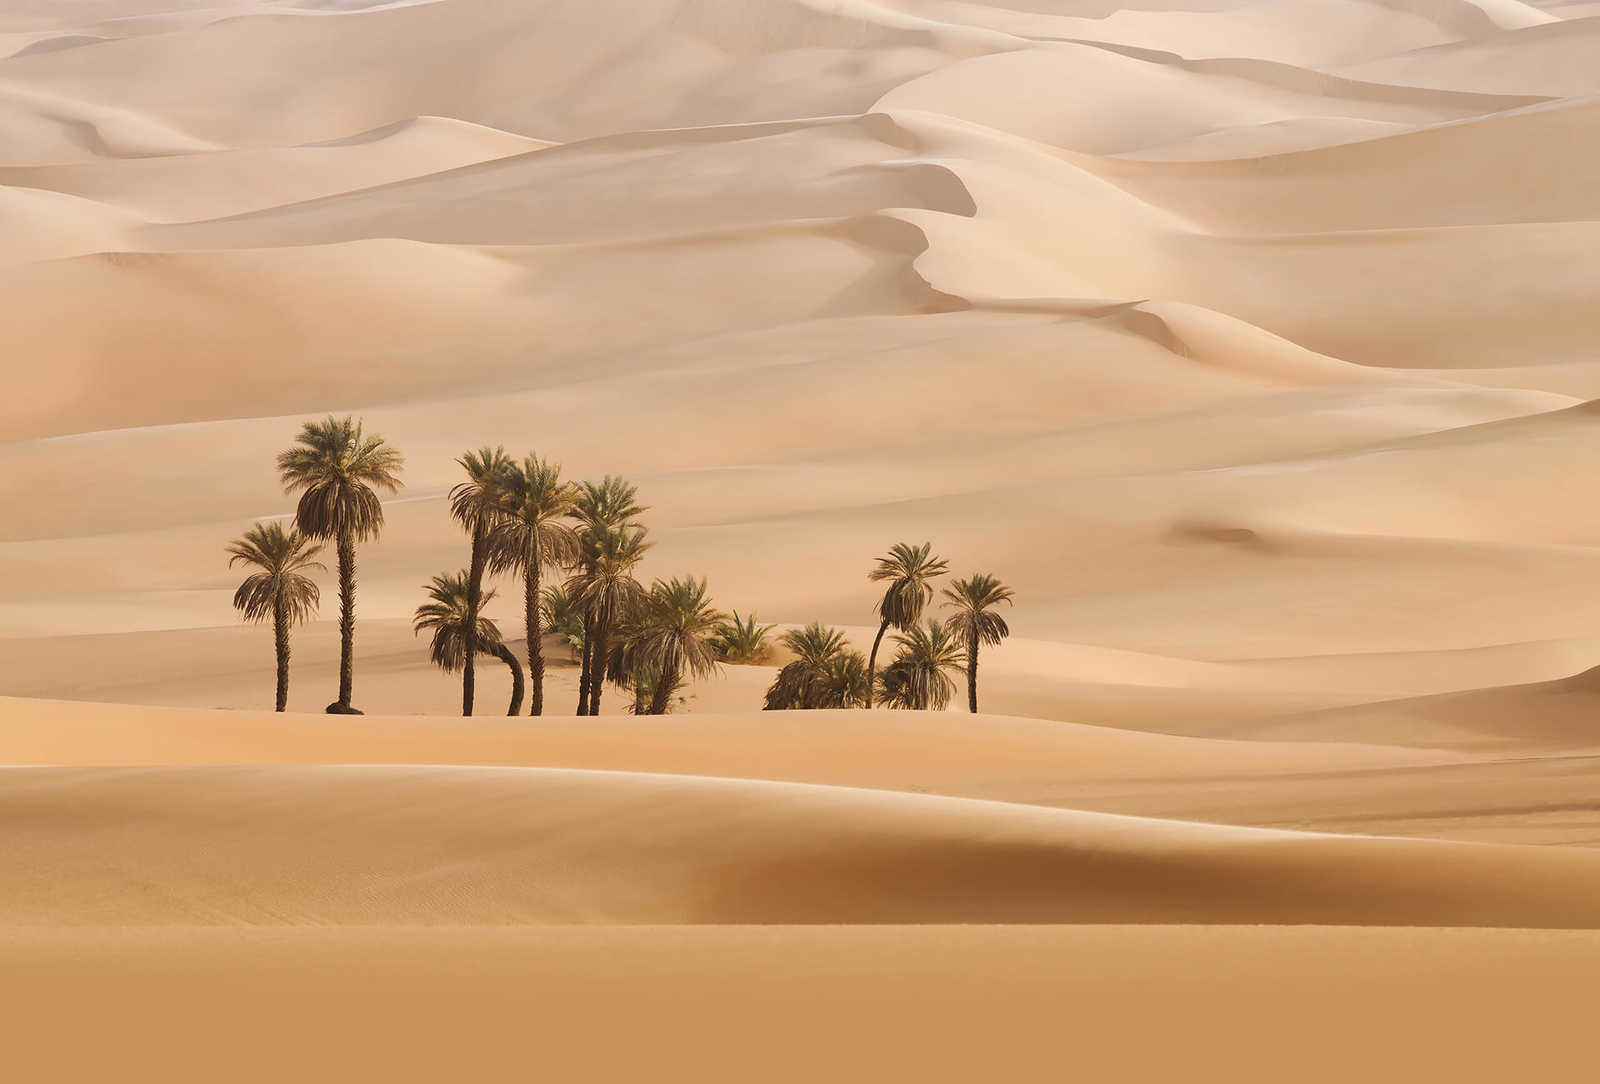 Fototapete Wüste mit Palmen – Beige
